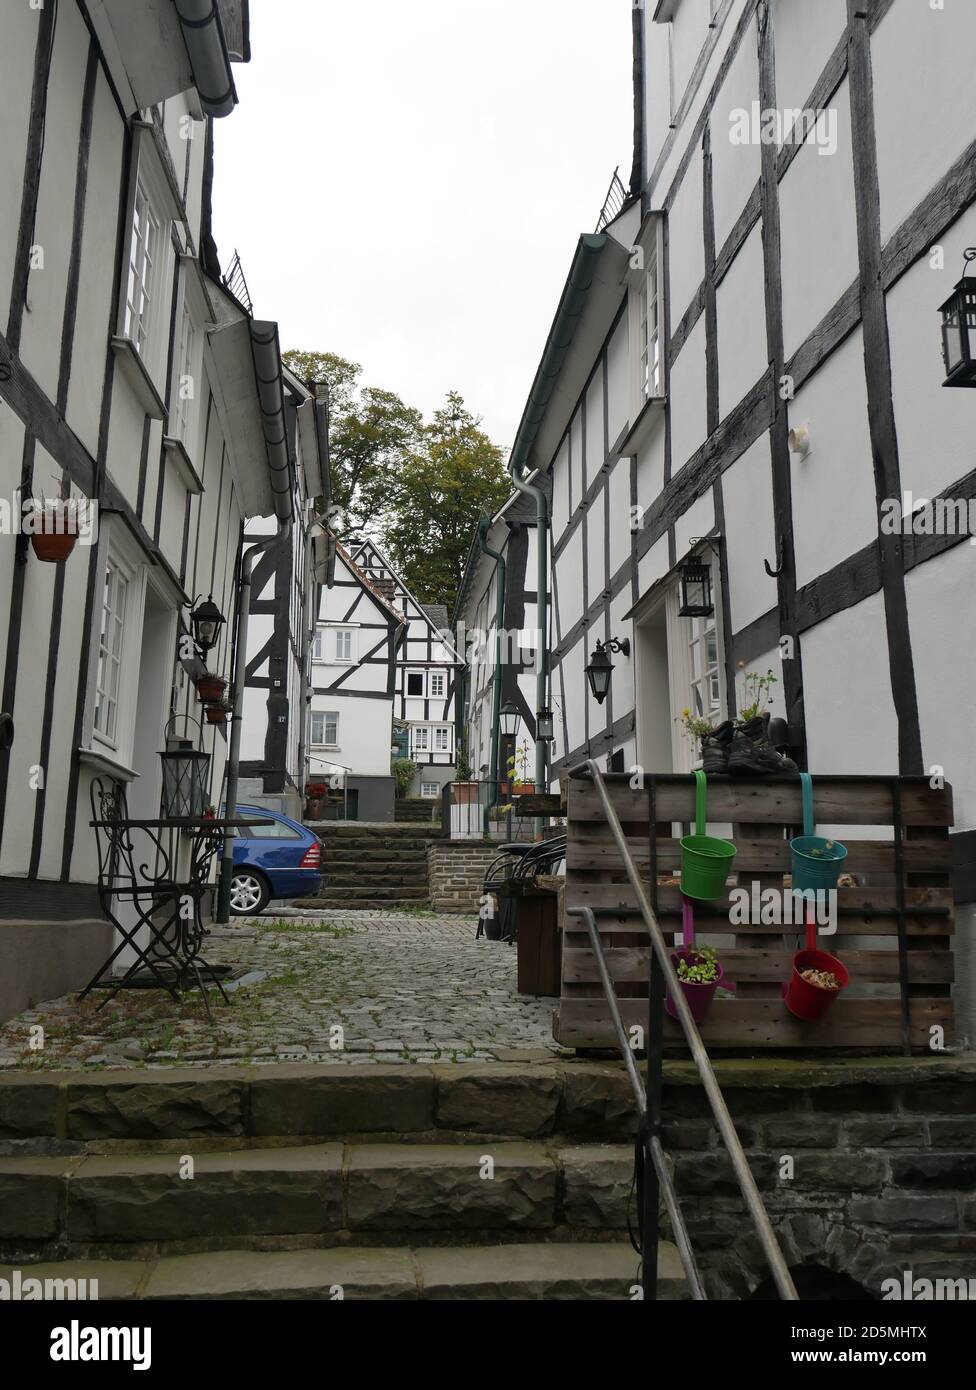 Altstadt von Freudenberg. Wünderschöne Fachwerkhäuser, die sogenannten weißen Flecken von Freudenberg. Stock Photo